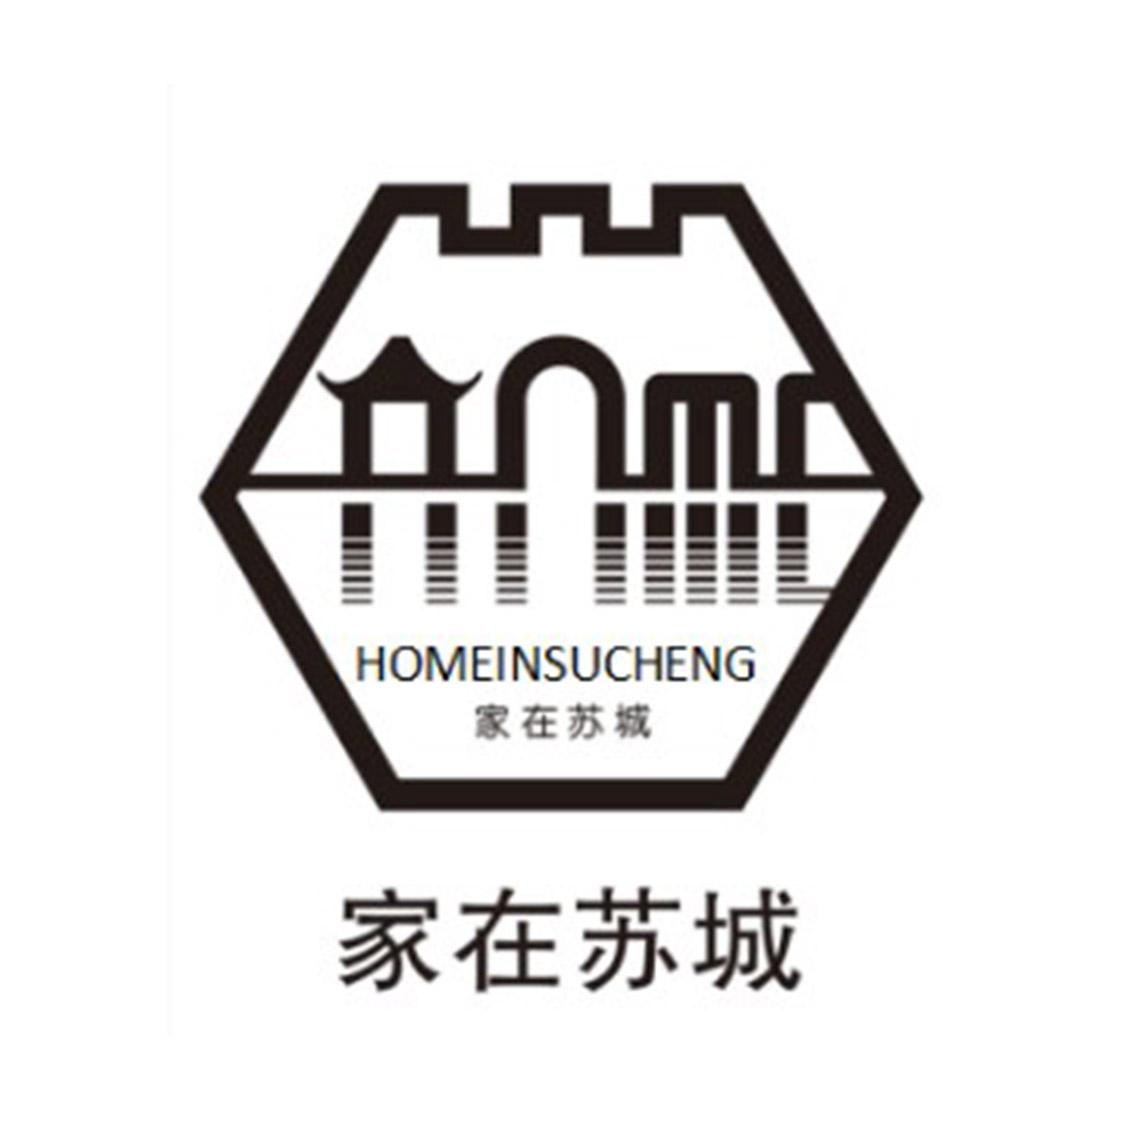 商标文字家在苏城 homeinsucheng商标注册号 49660365,商标申请人苏州